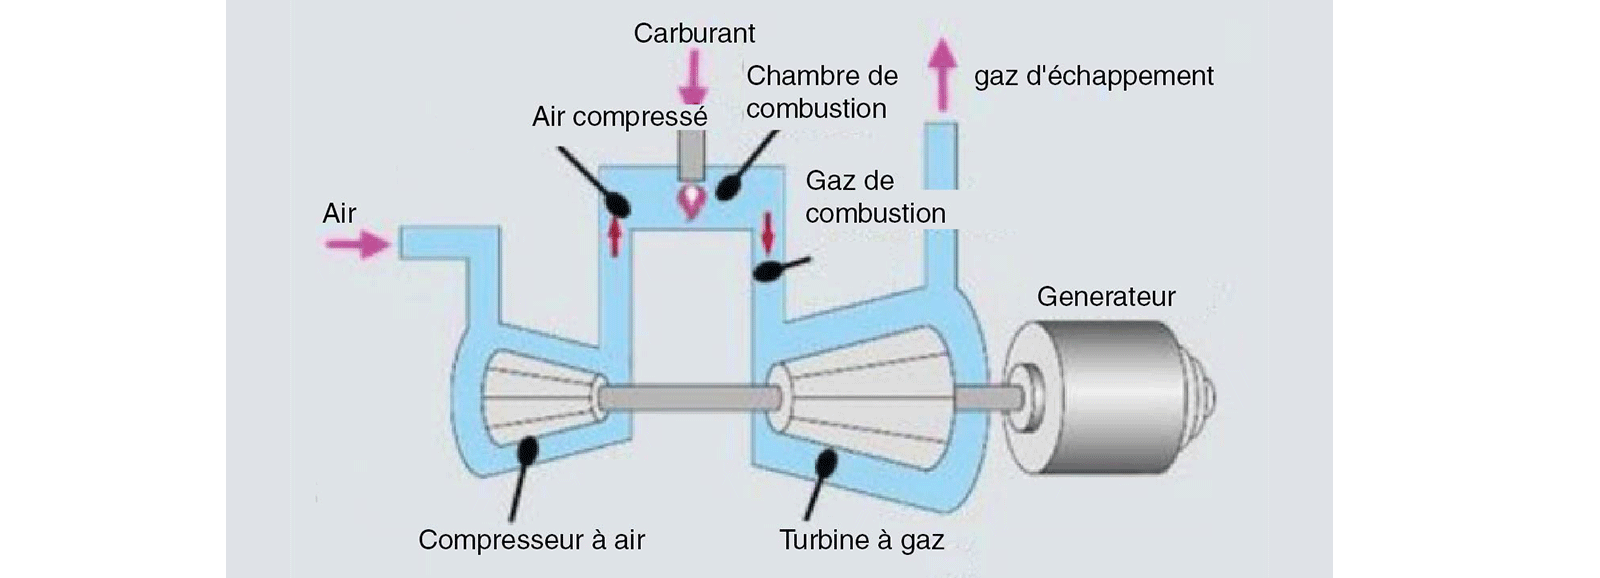 Turbine à gaz